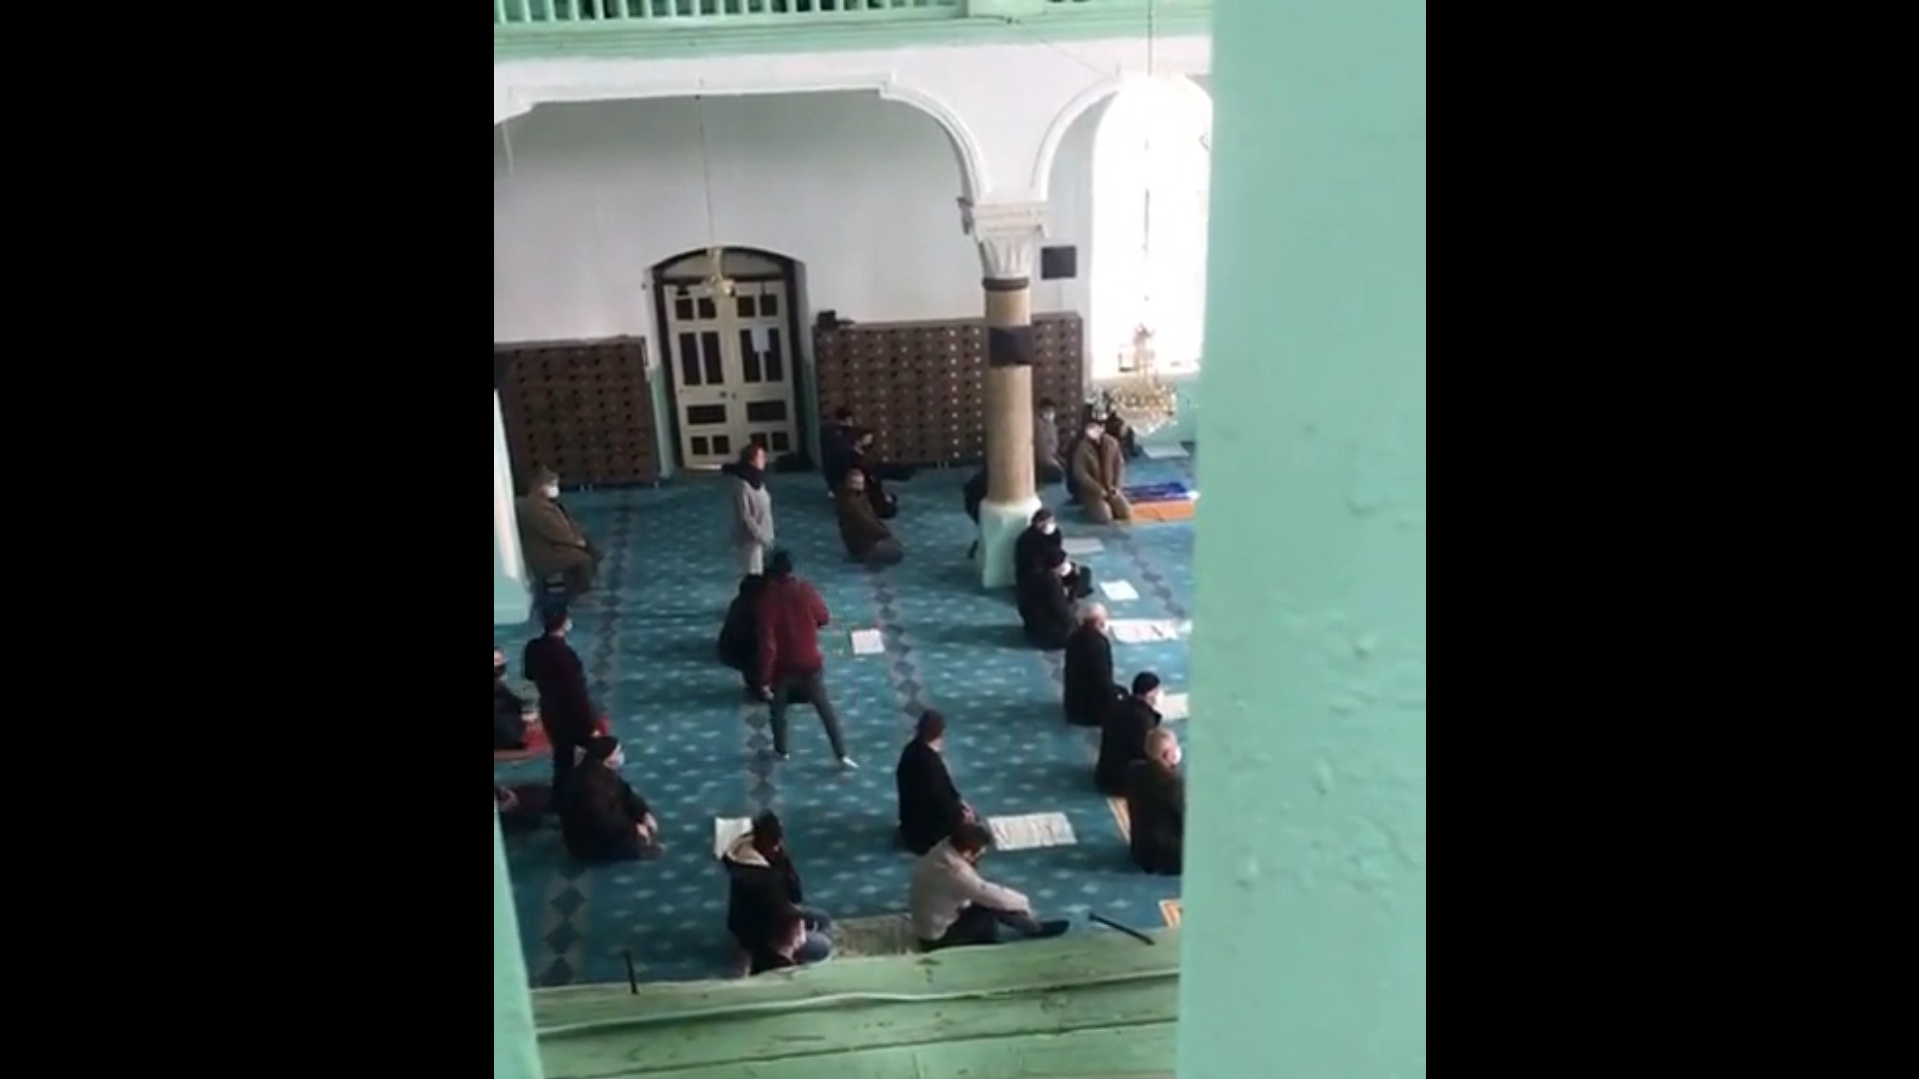 Cuma namazında camiye giren kadından ilginç provokasyon